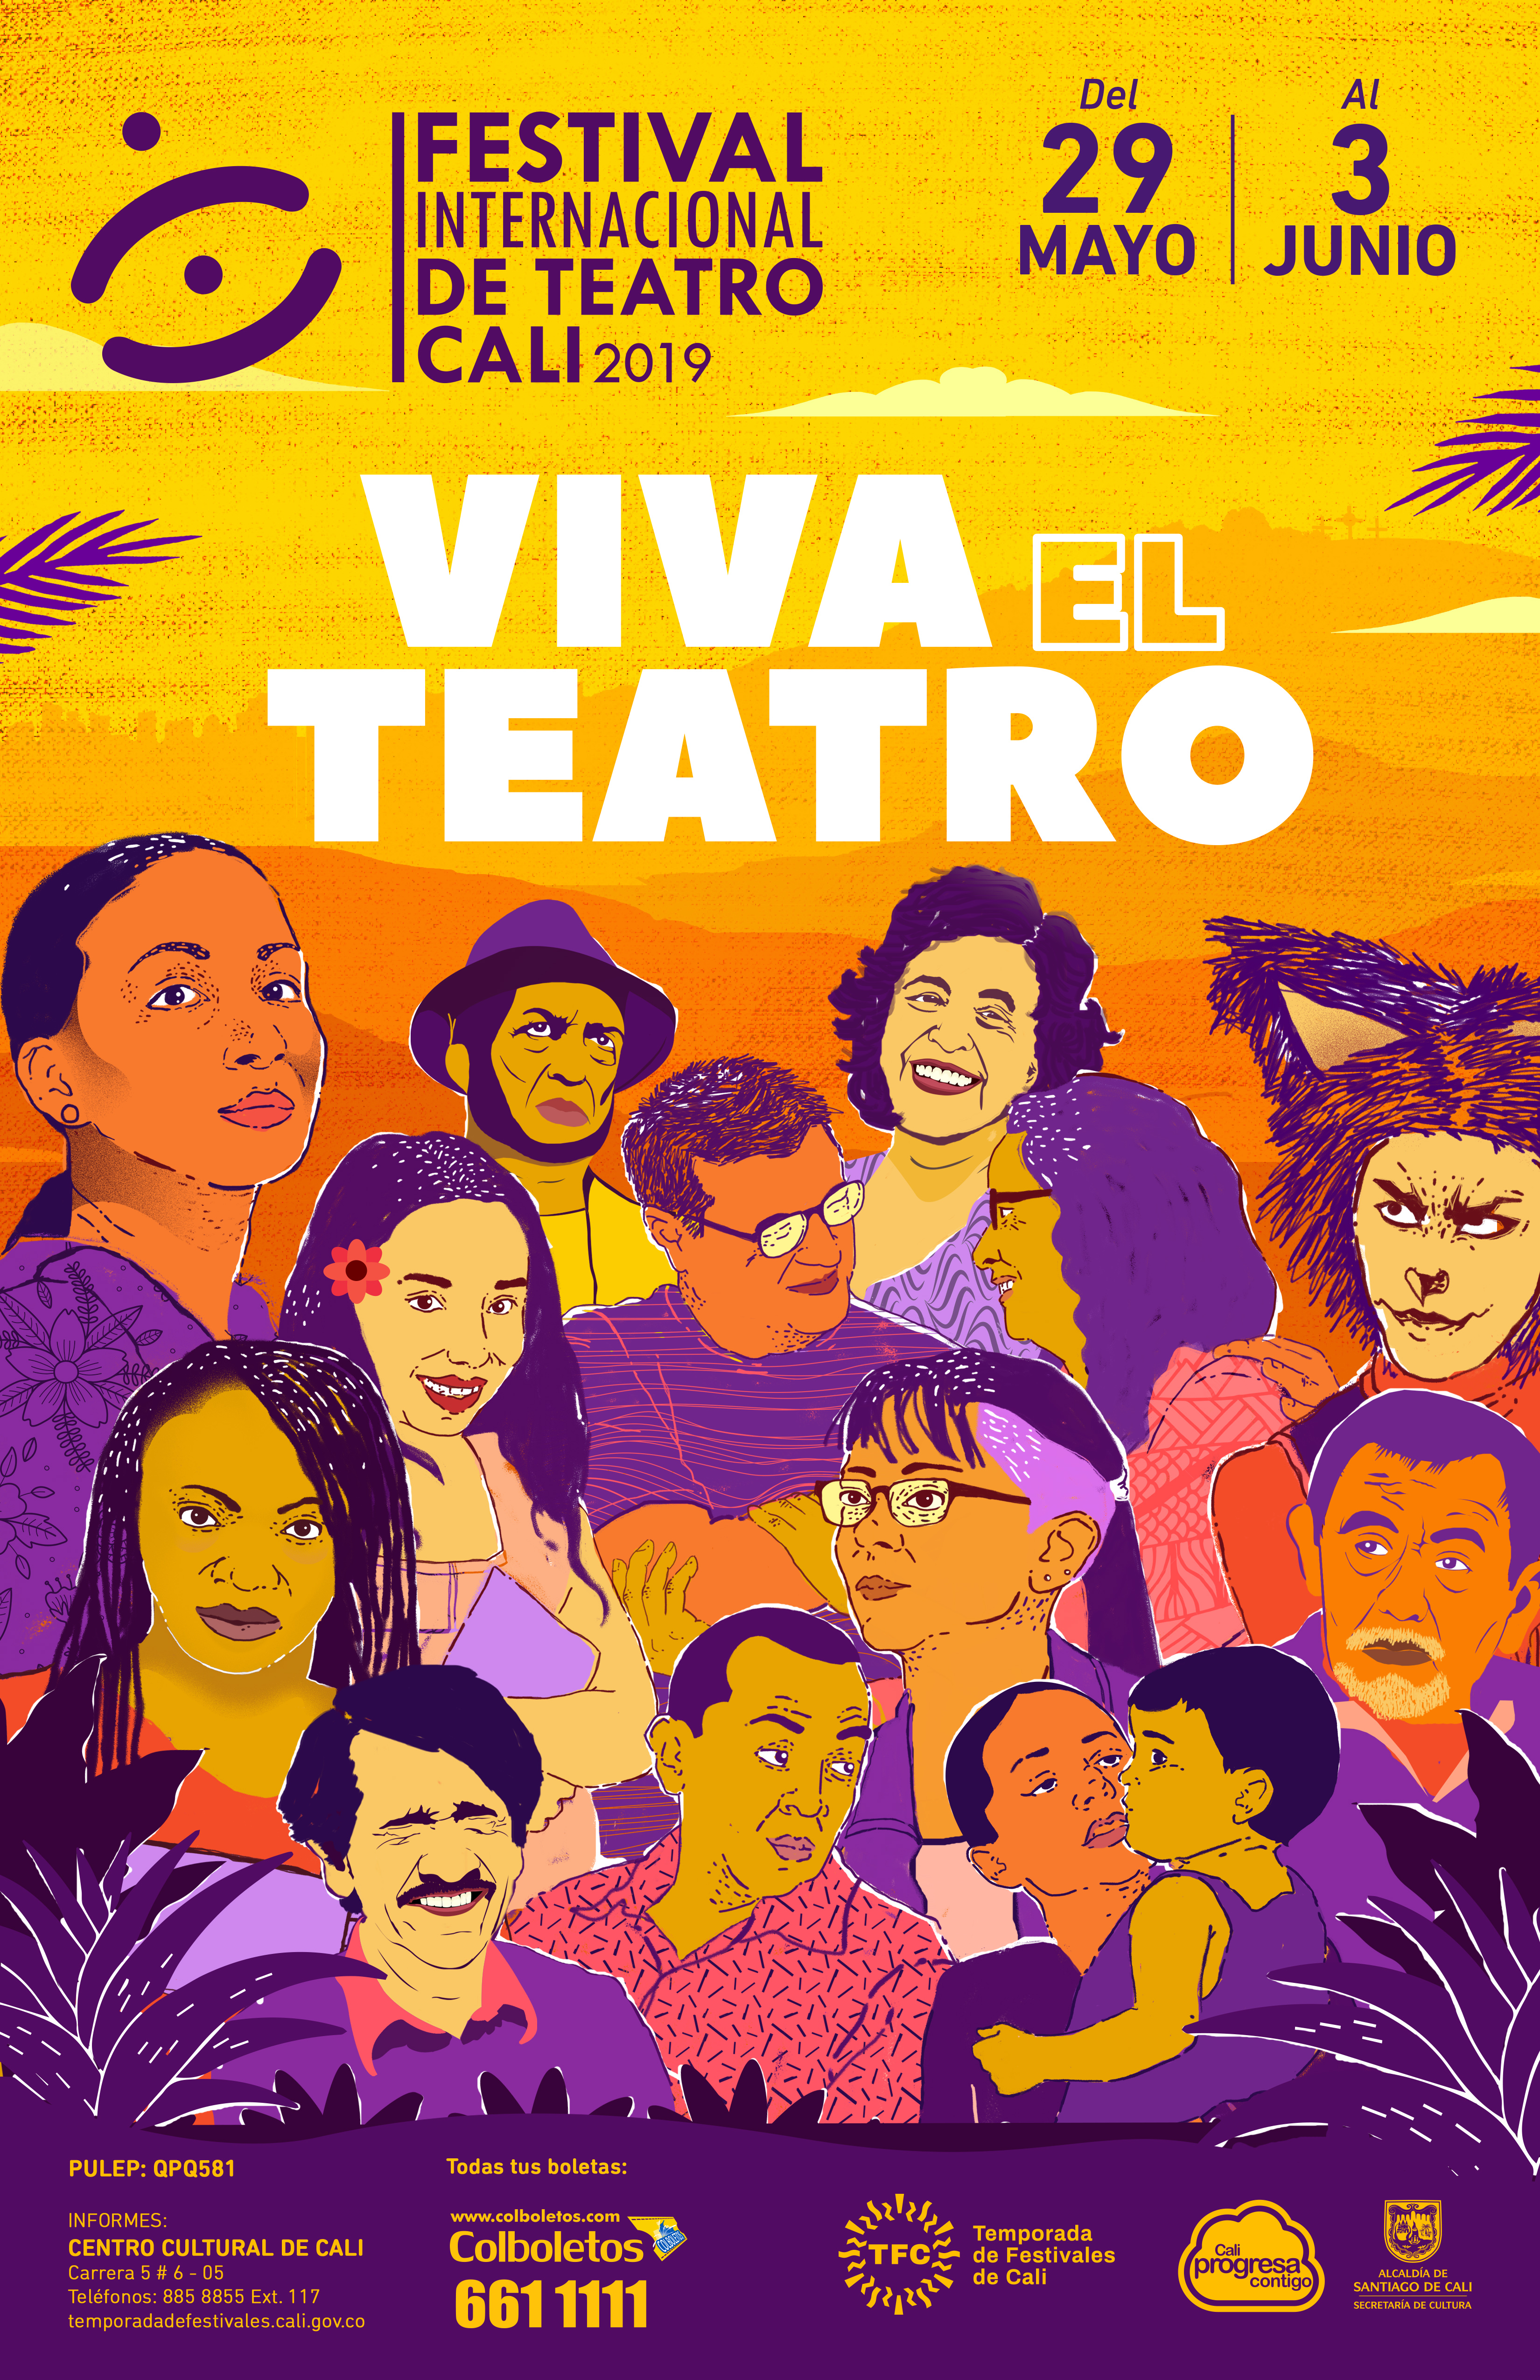 Este es el afiche oficial del Festival Internacional de Teatro de Cali 2019